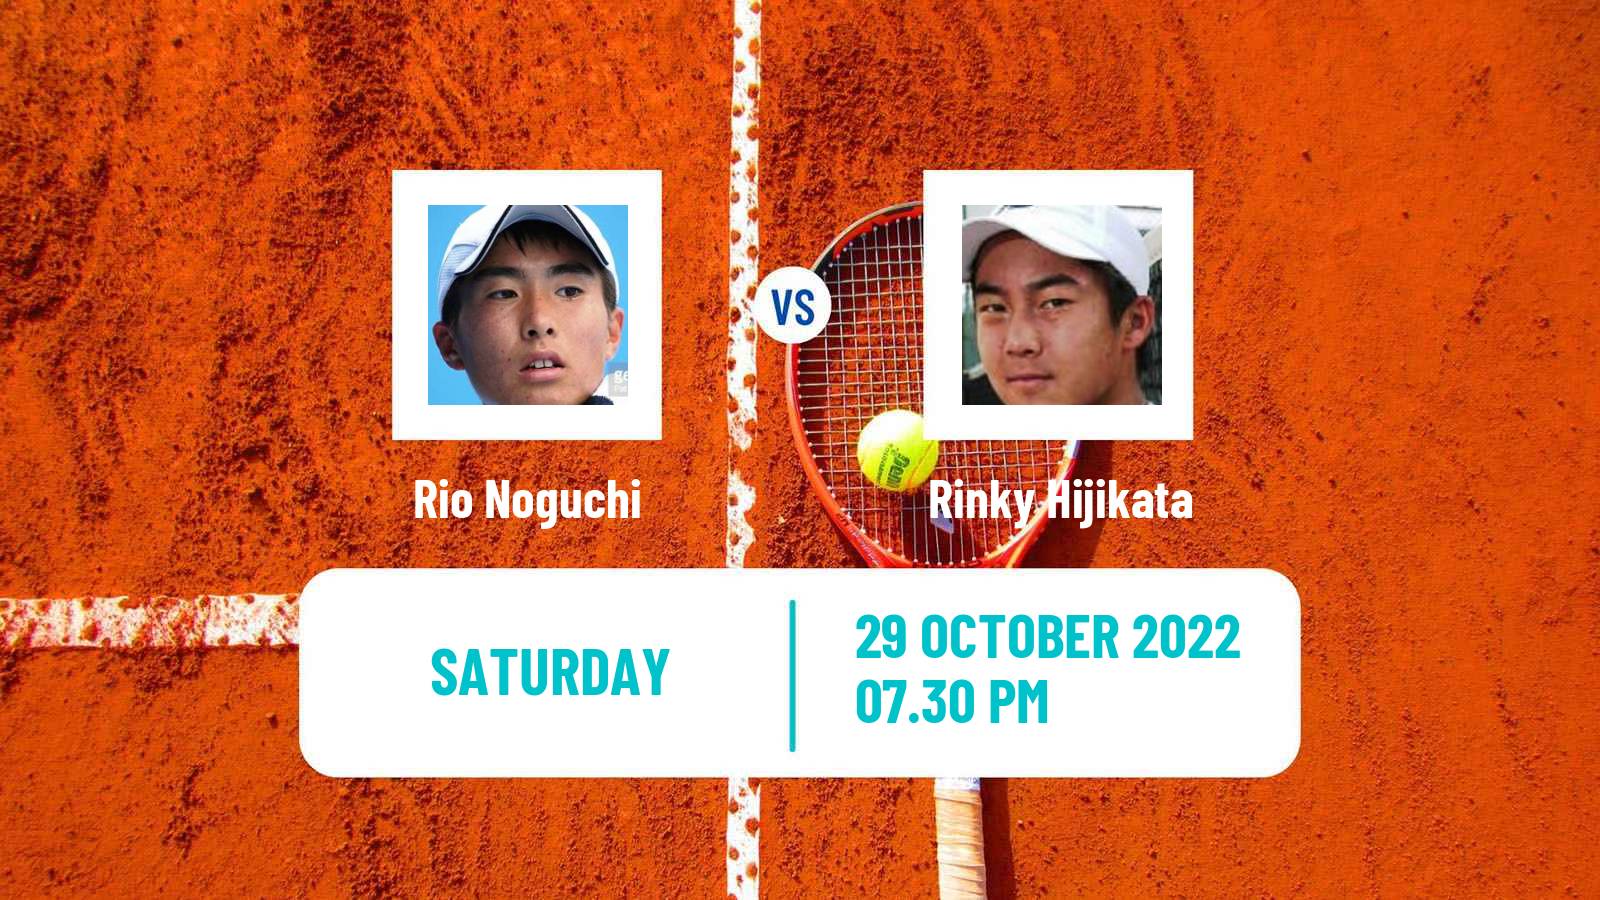 Tennis ATP Challenger Rio Noguchi - Rinky Hijikata